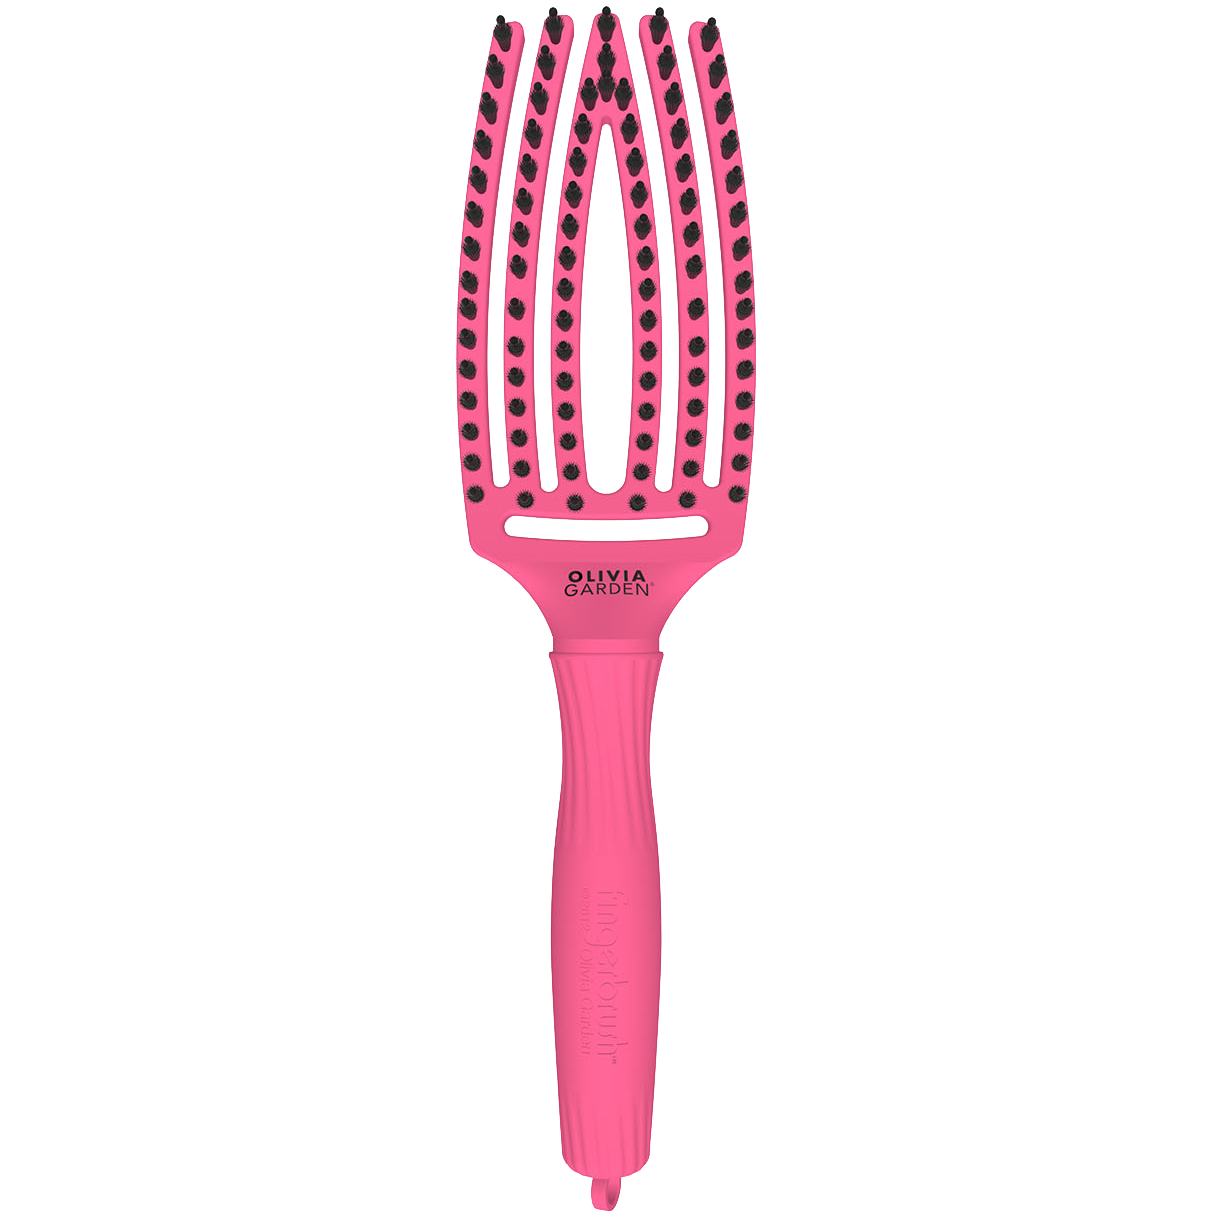 Olivia Garden Fingerbrush AMOUR средняя ярко-розовая расческа, 1 шт.